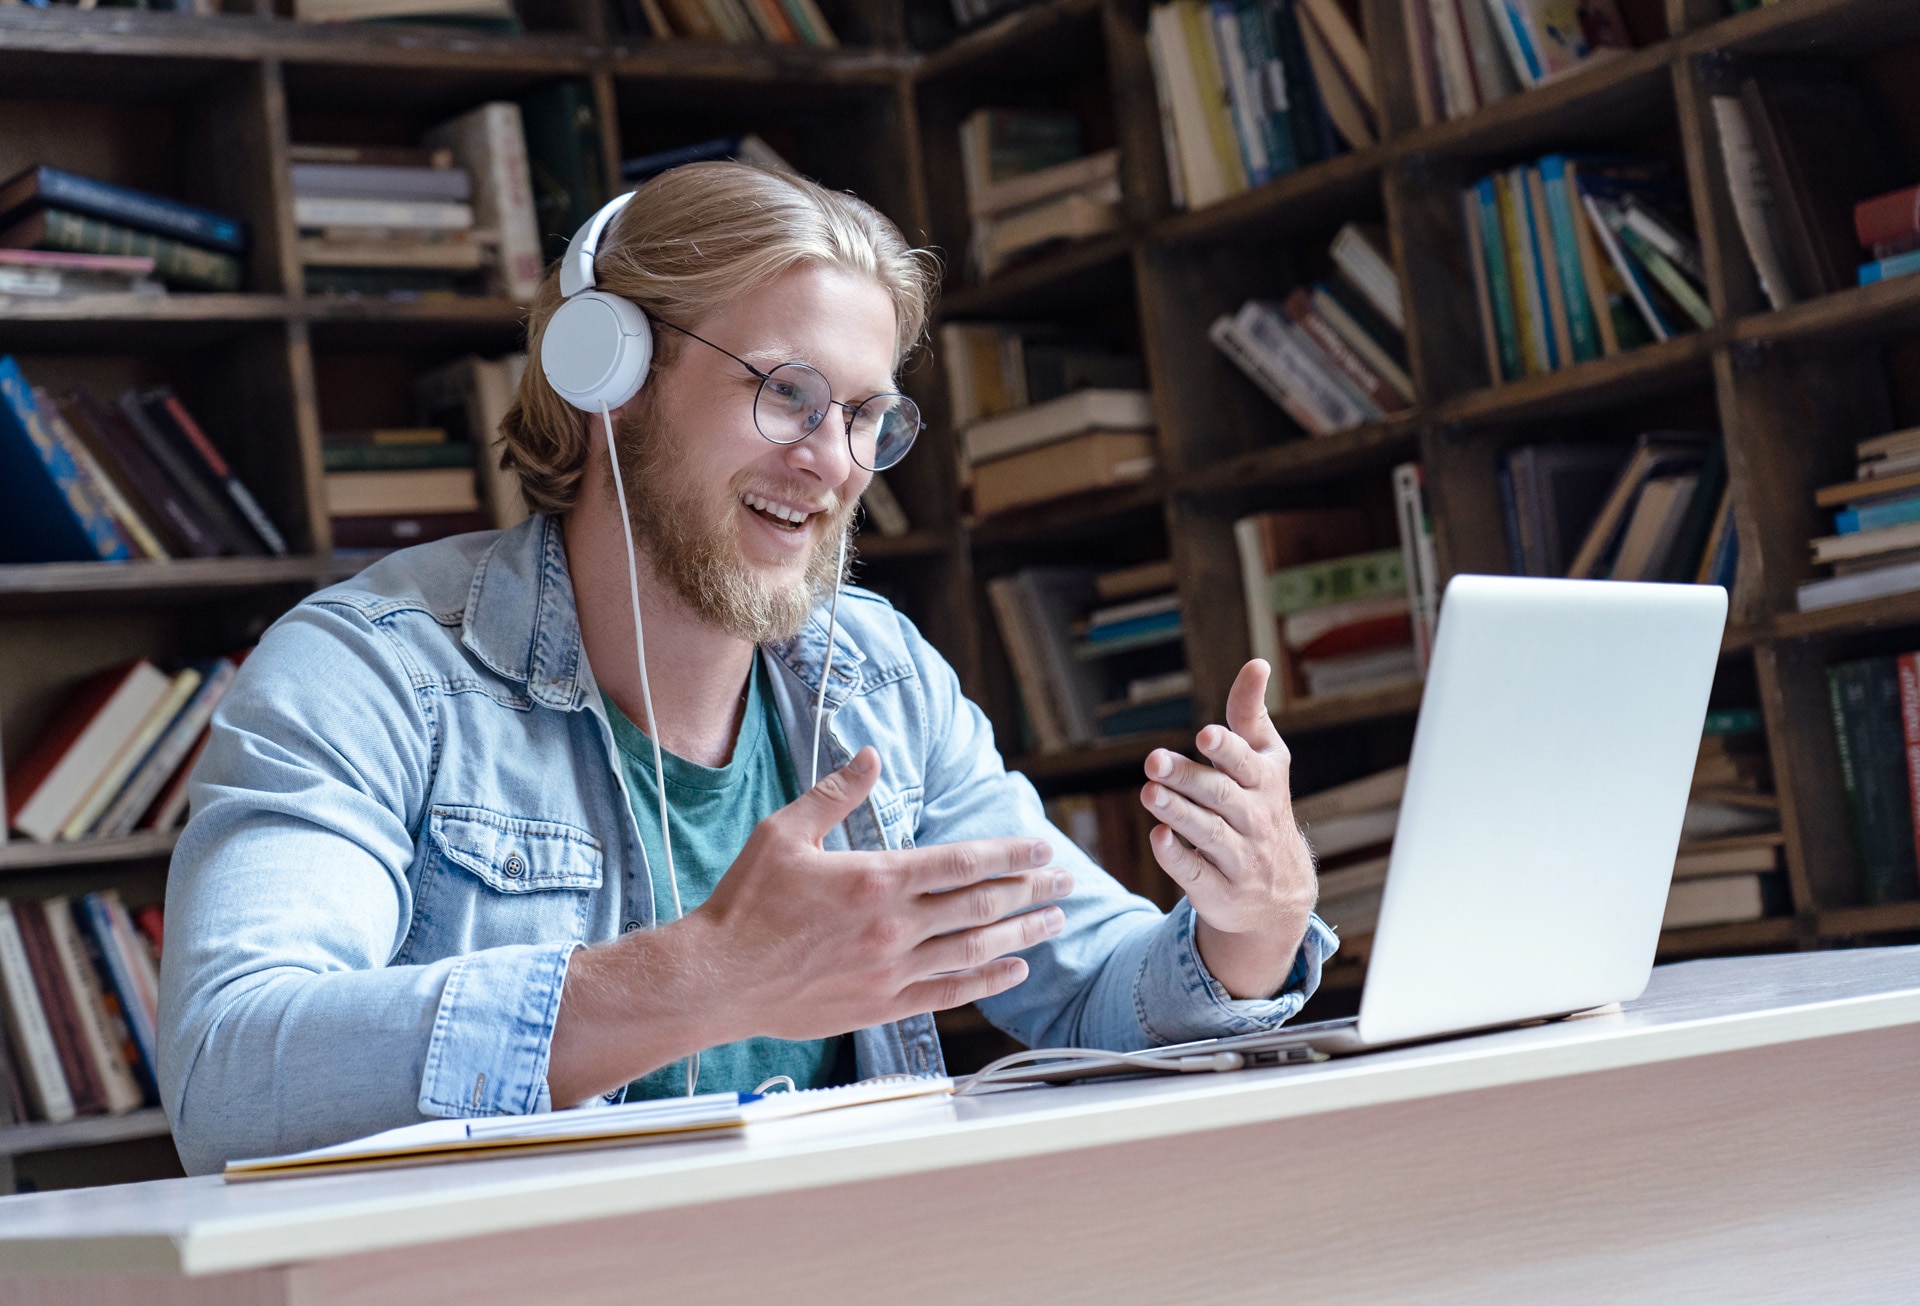 Lächelnder Student online, Lehrer trägt Kopfhörer, sprechen, Videoanruf, schaut auf den Bildschirm eines Laptops, kommuniziert über einen Chat mit einem Skype-Tutor, Fernstudium per E-Learning-Kurs in Bibliothek